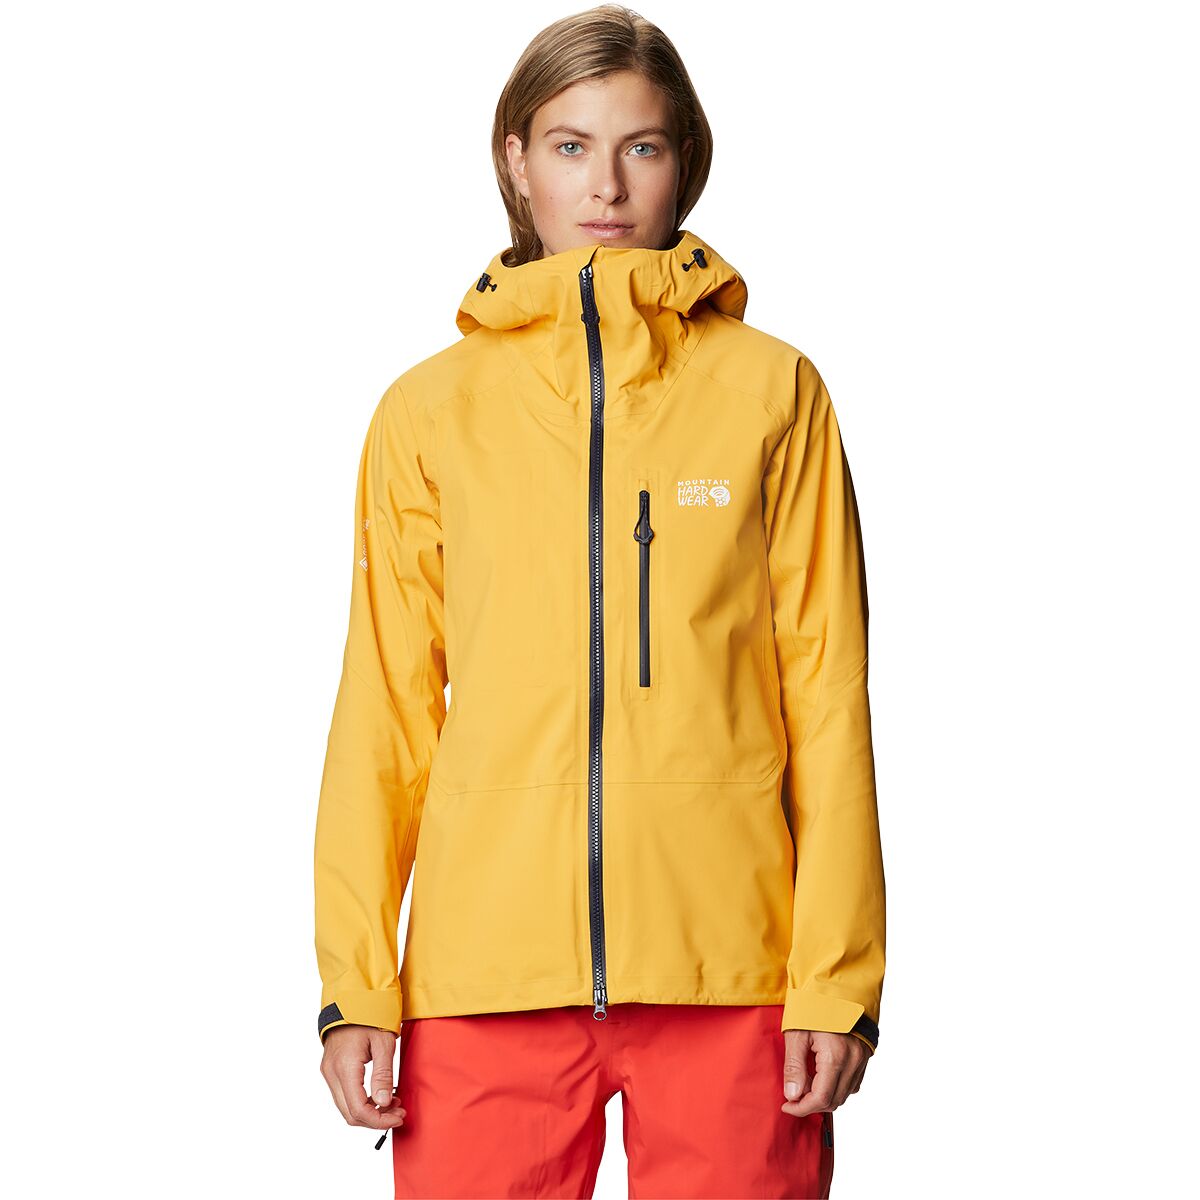 Mountain Hardwear GORE-TEX PRO LT Jacket - Women's